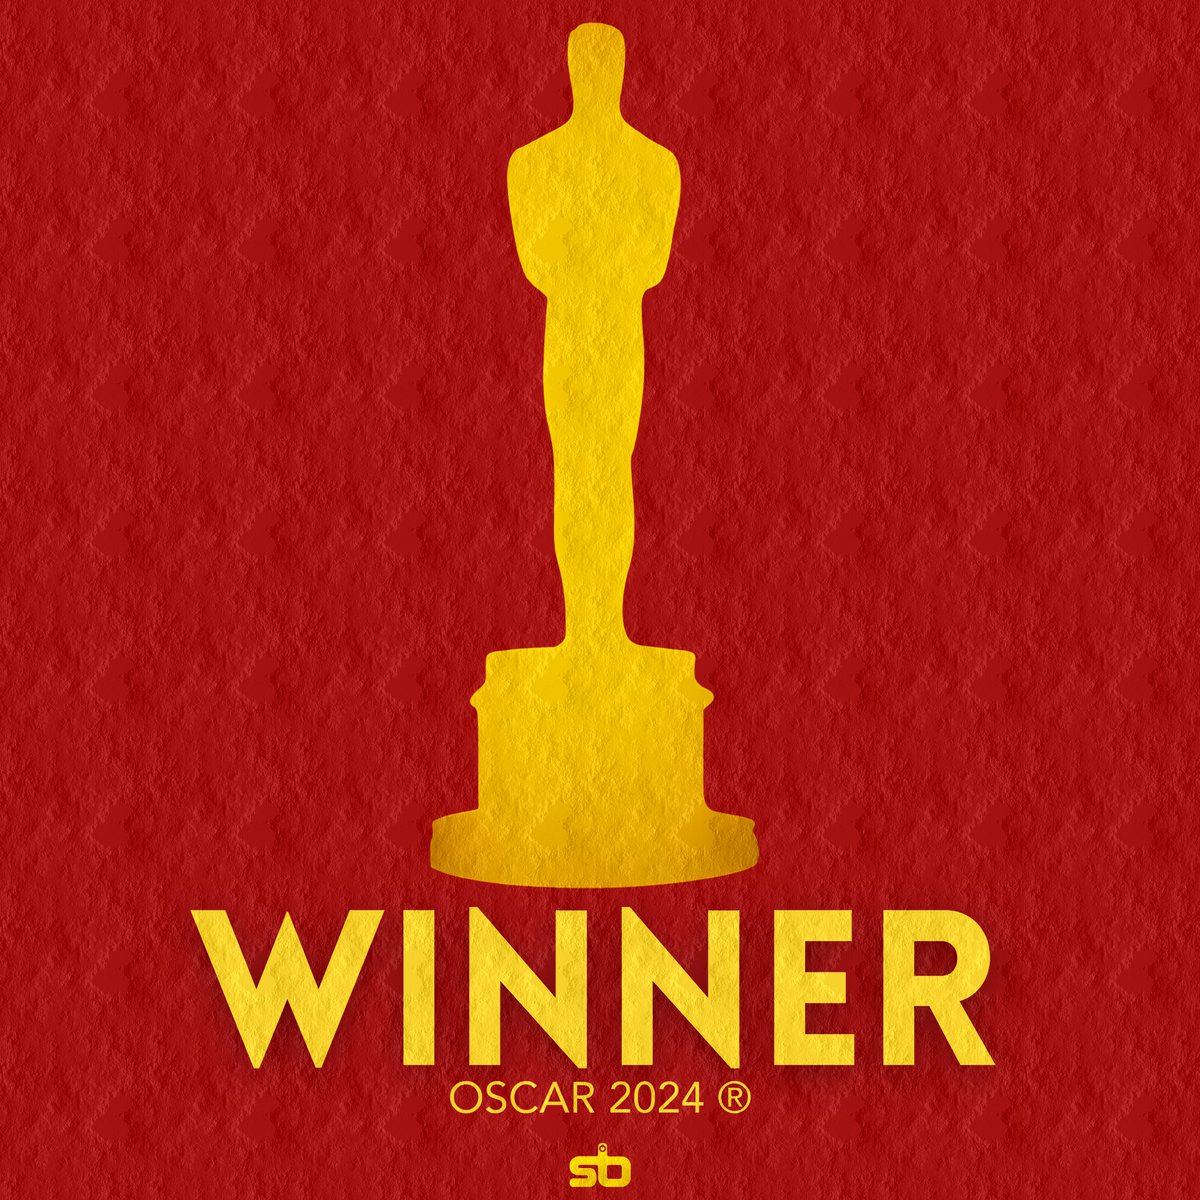 🏆 ANATOMIA DE UMA QUEDA (Anatomy of a Fall) vence o Oscar de “Melhor Roteiro Original”. #Oscars #Oscars2024